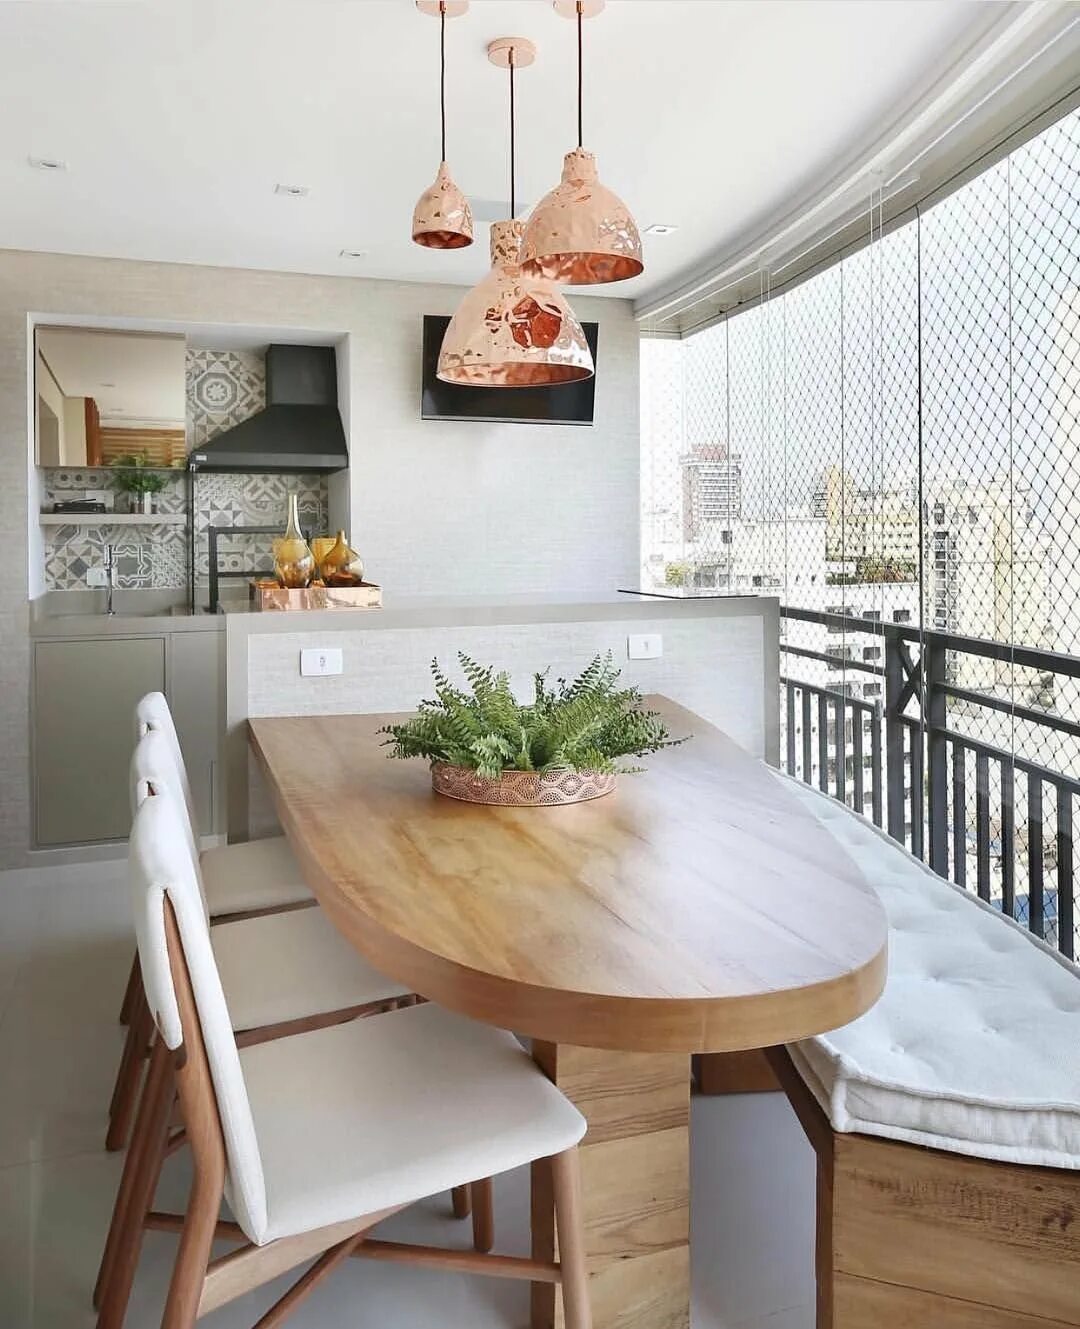 Дизайн балкона кухни фото. Обеденная зона на лоджии. Обеденный стол для кухни. Обедкннп зона на балконе. Обеденный стол на балконе.